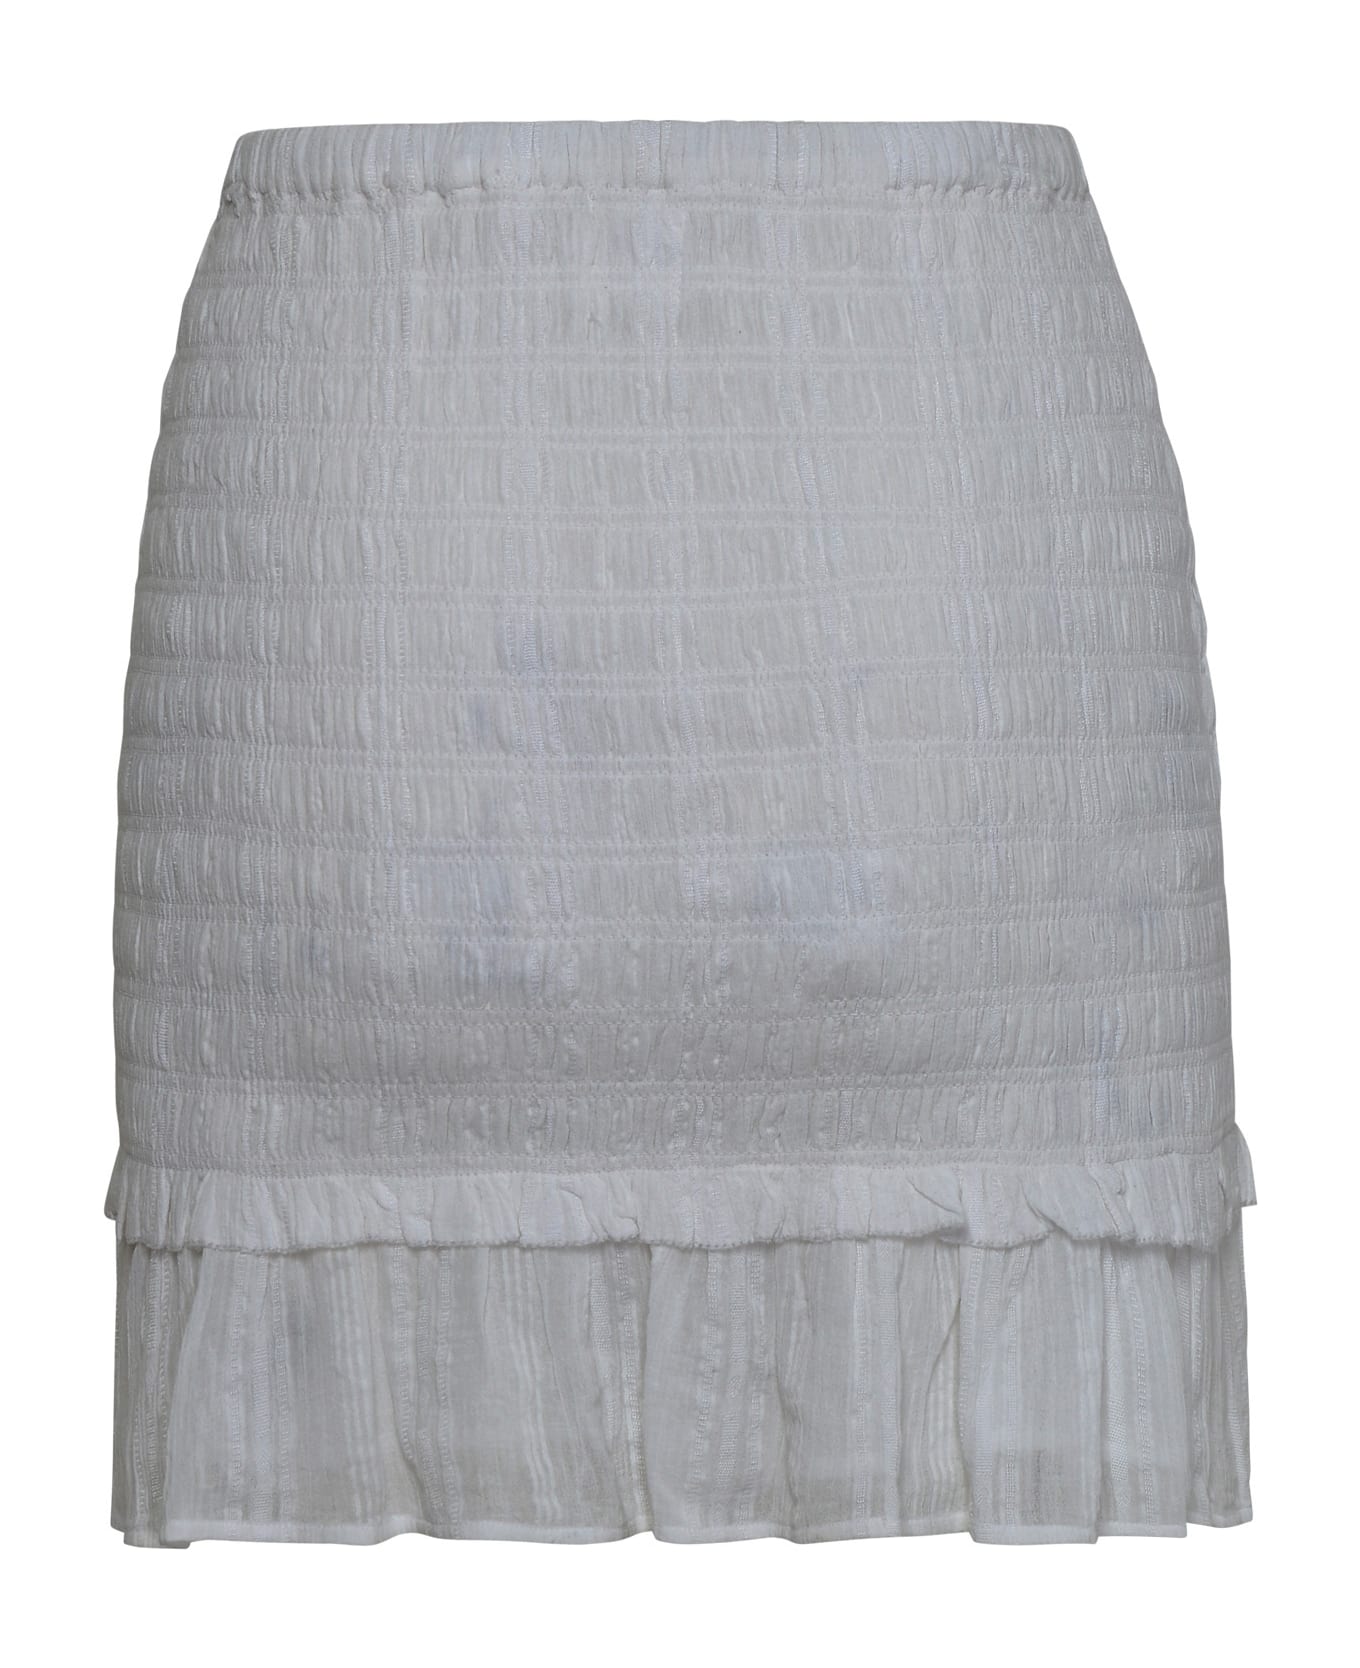 Marant Étoile 'dorela' White Cotton Miniskirt - White